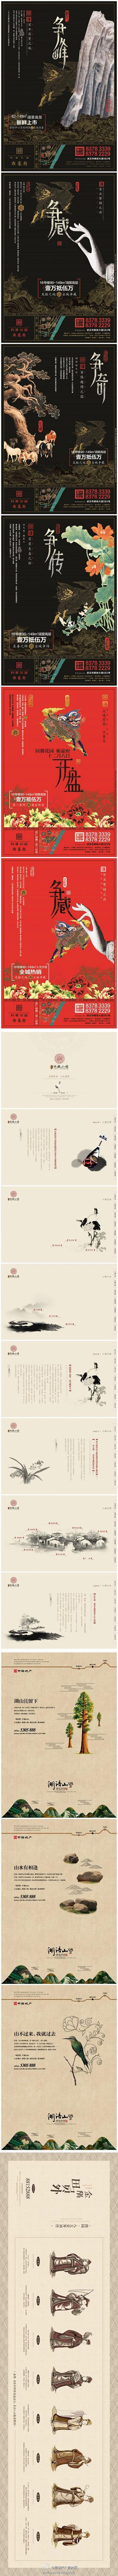 #房地产广告# 4组中国风房地产广告设计...